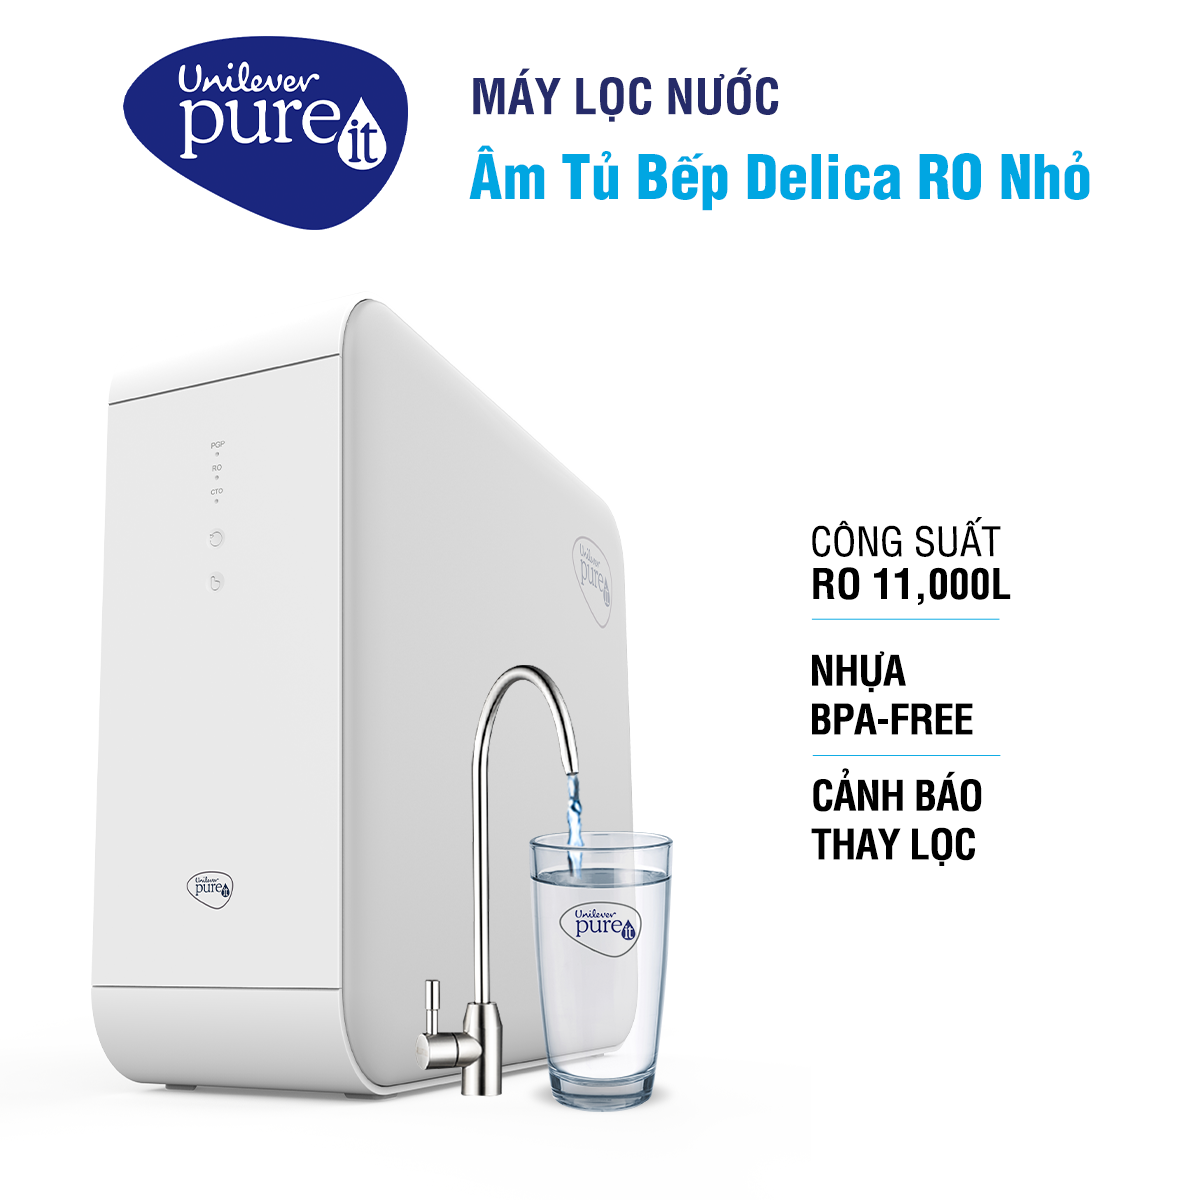 Máy lọc nước Pureit Delica Âm tủ bếp thiết kế nhỏ gọn với Công suất RO 11